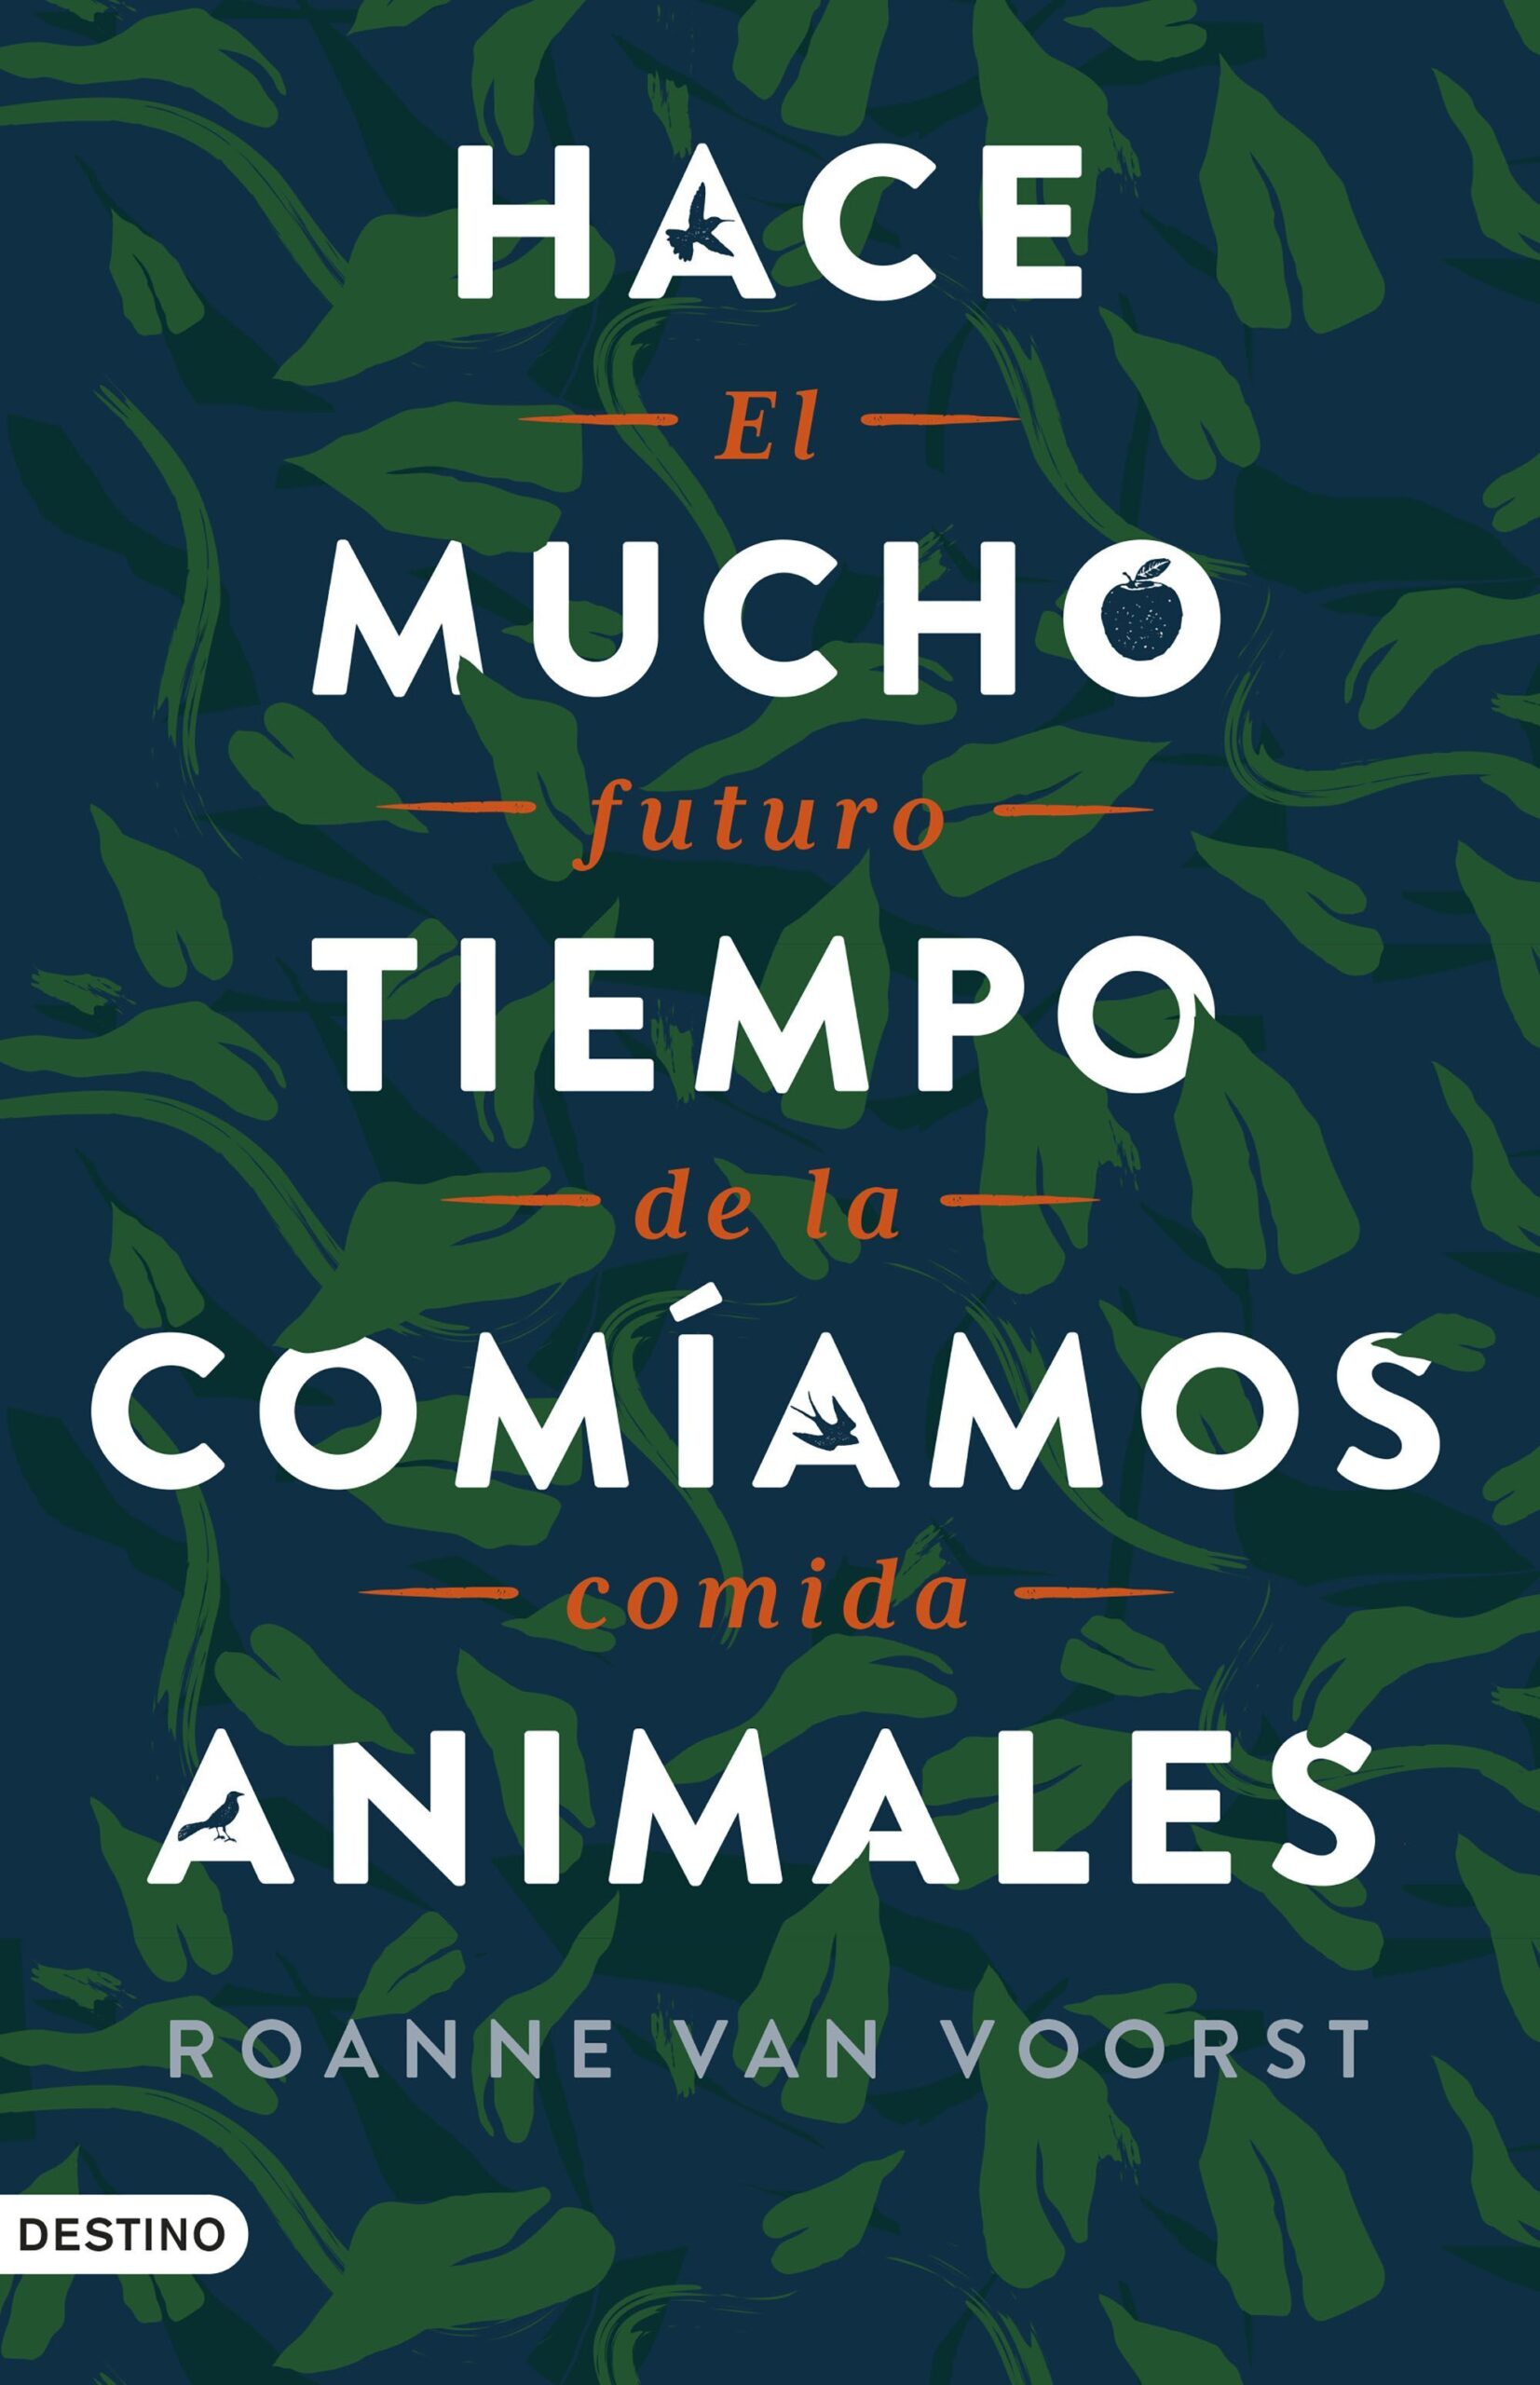 HACE-MUCHO-TIEMPO-COMIAMOS-ANIMALES.jpg